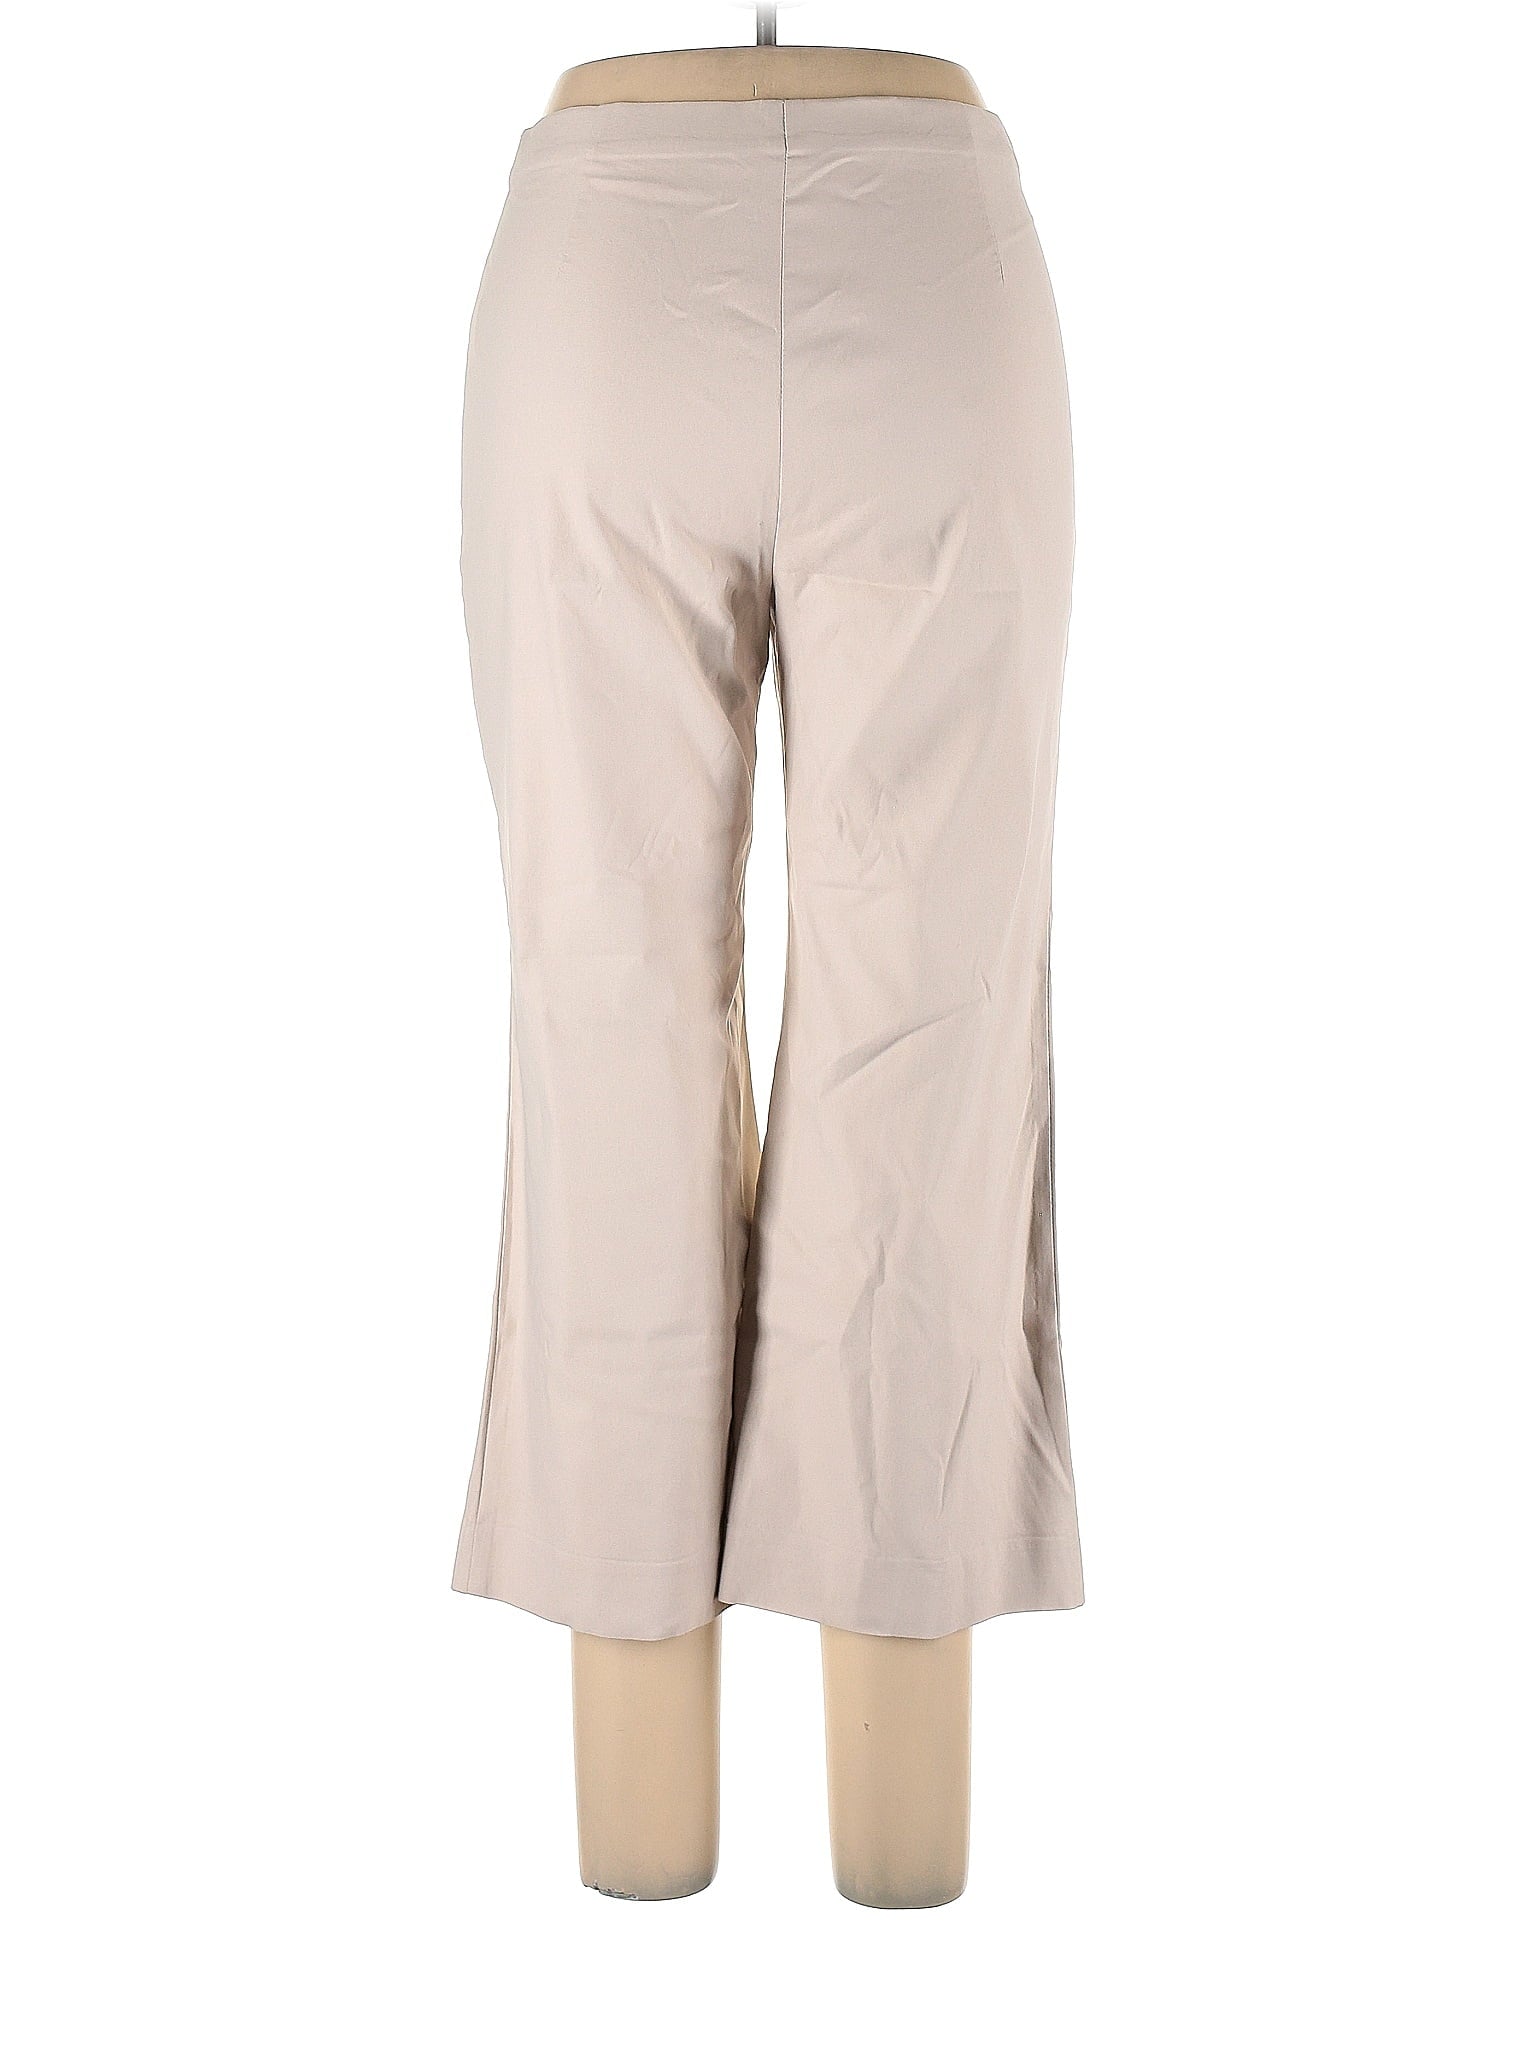 Dress Pants size - 10 P